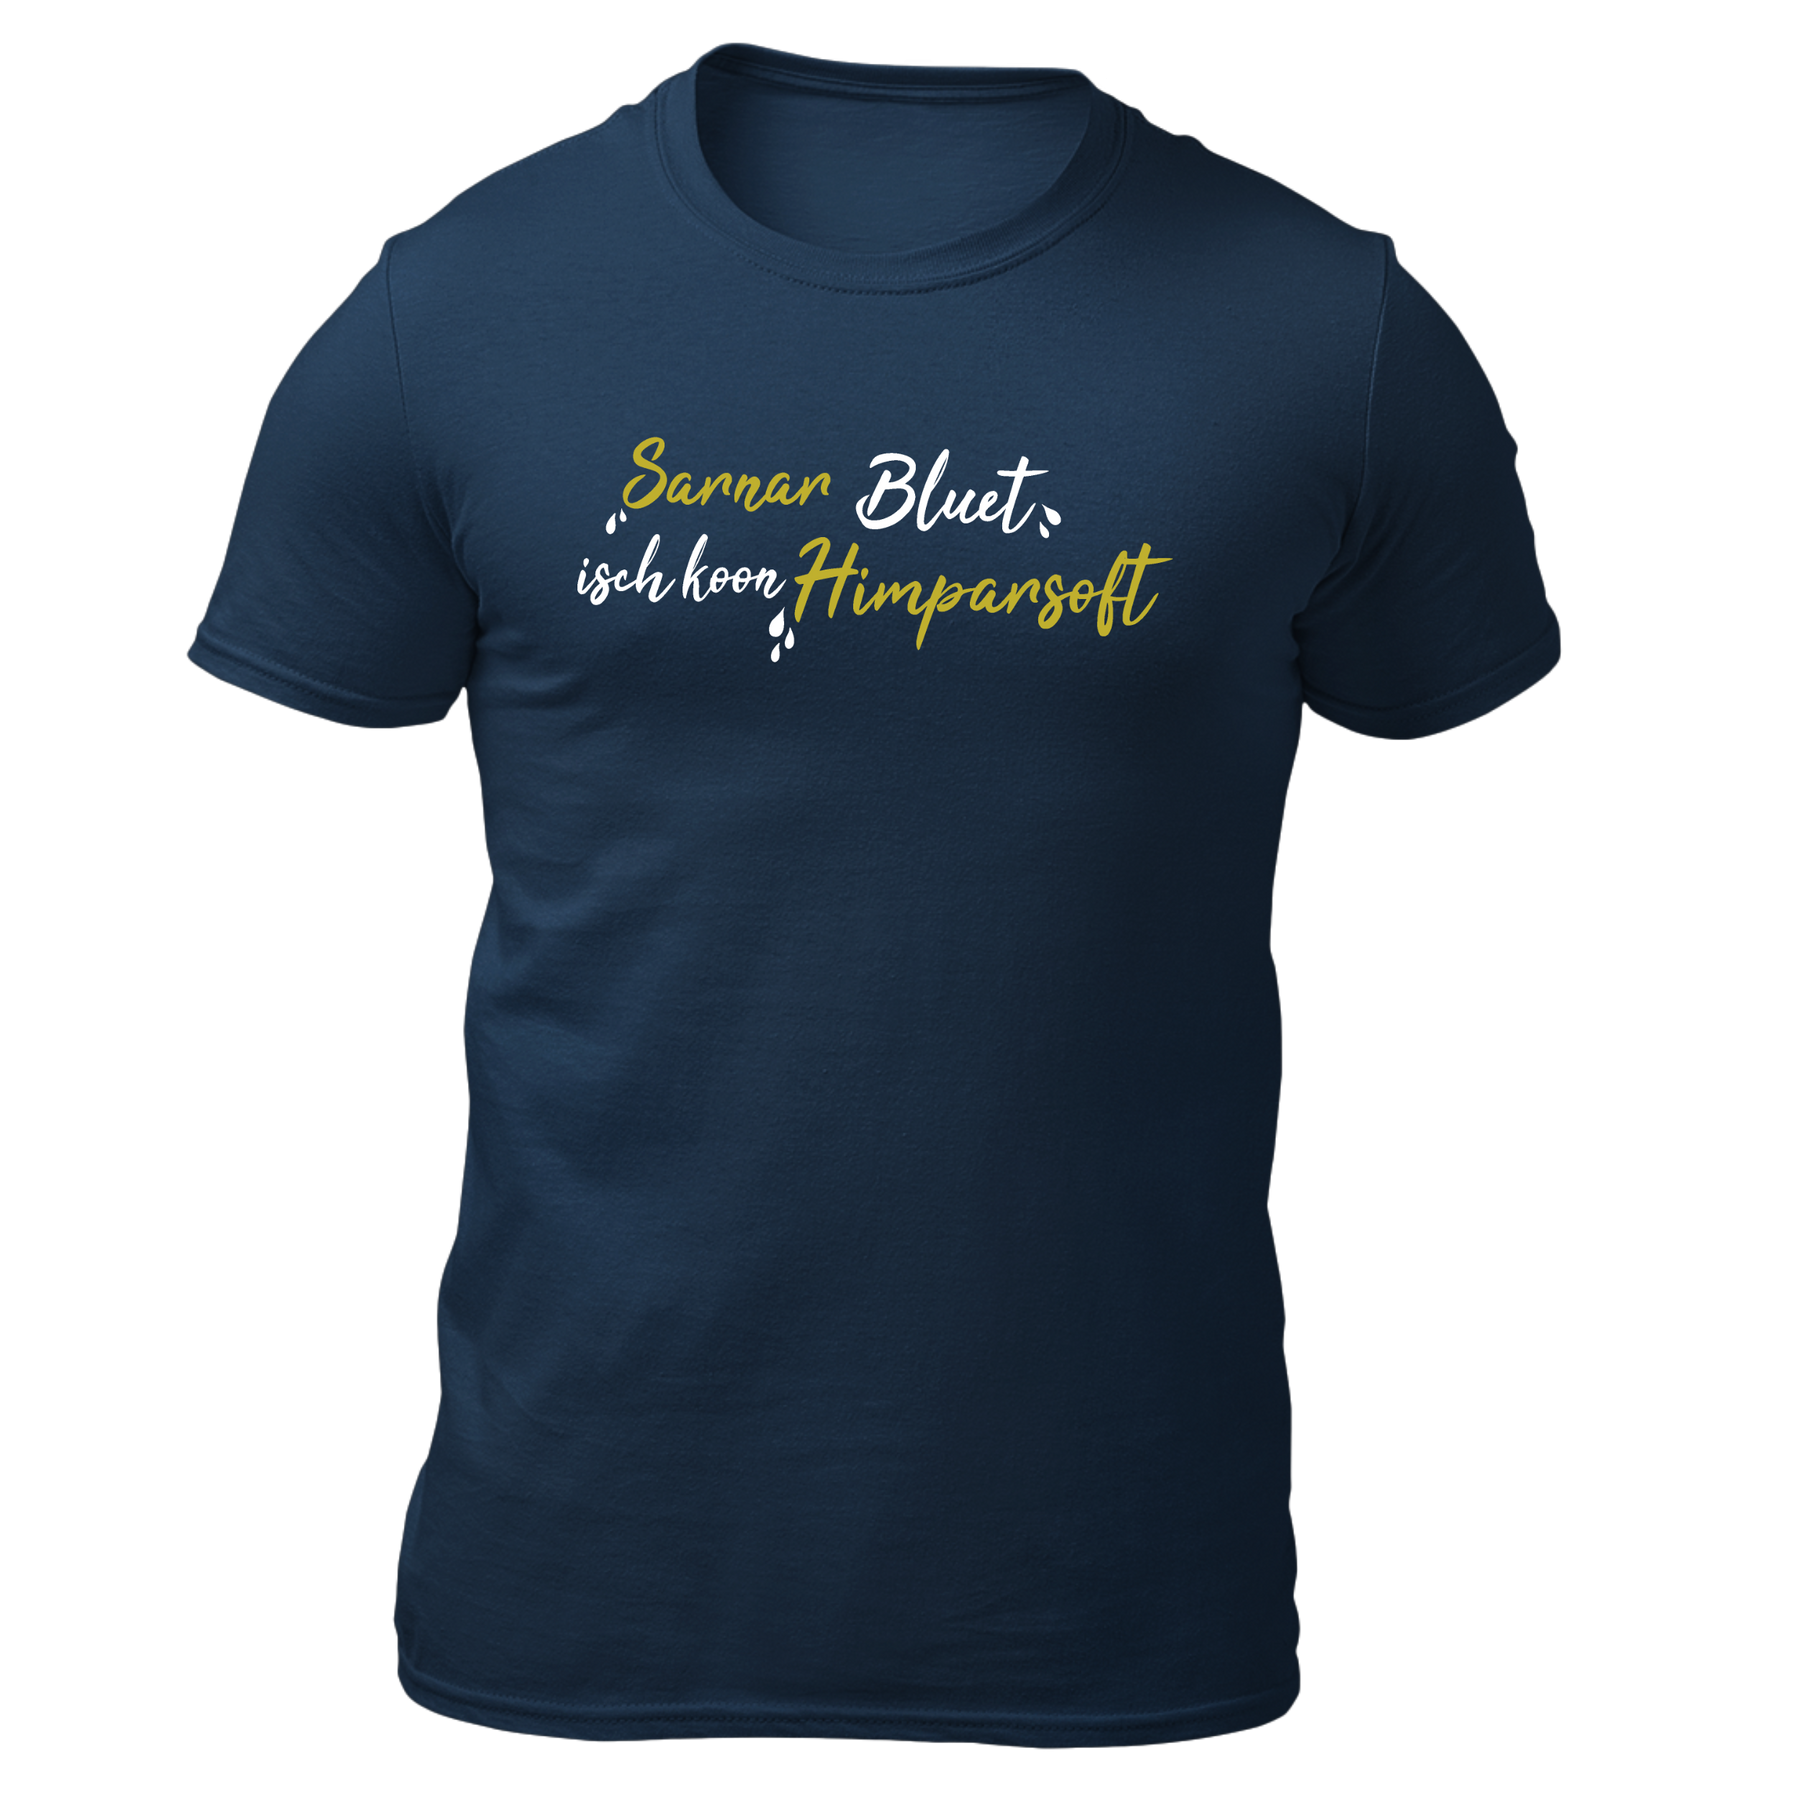 Sarnarbluet isch koon Himparsoft - Herren Shirt Bio - Navy / XS - Shirts & Tops